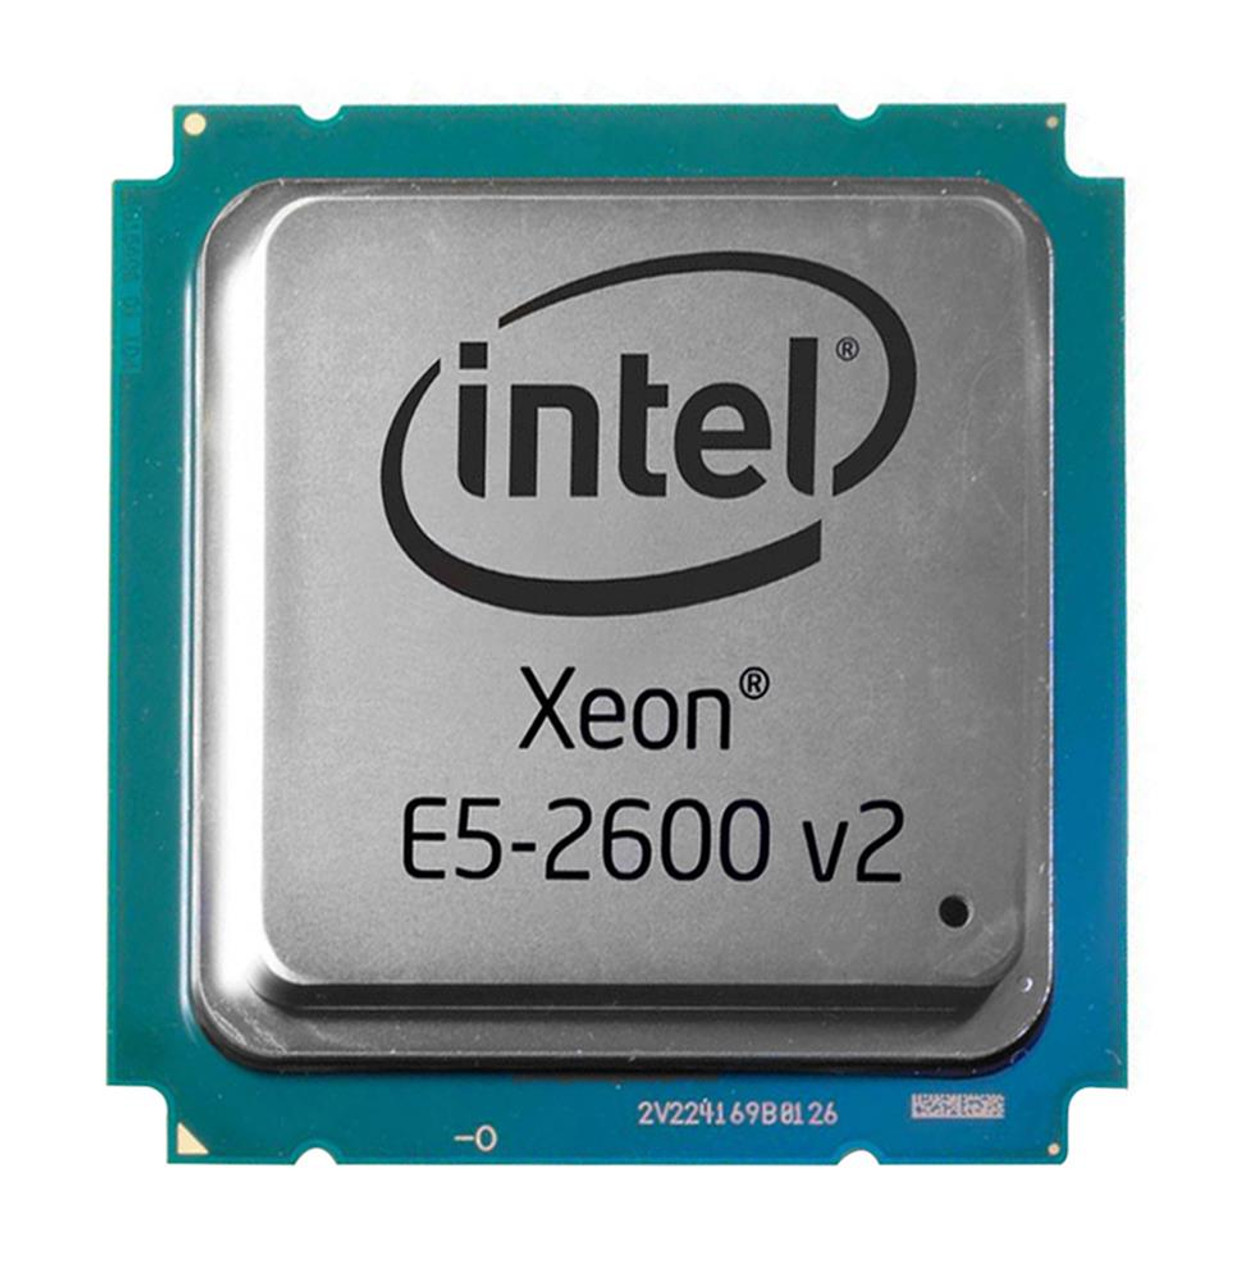 SR1AY-02 Intel Xeon E5-2603 v2 Quad Core 1.80GHz 6.40GT/s QPI 10MB L3 Cache Socket FCLGA2011 Processor